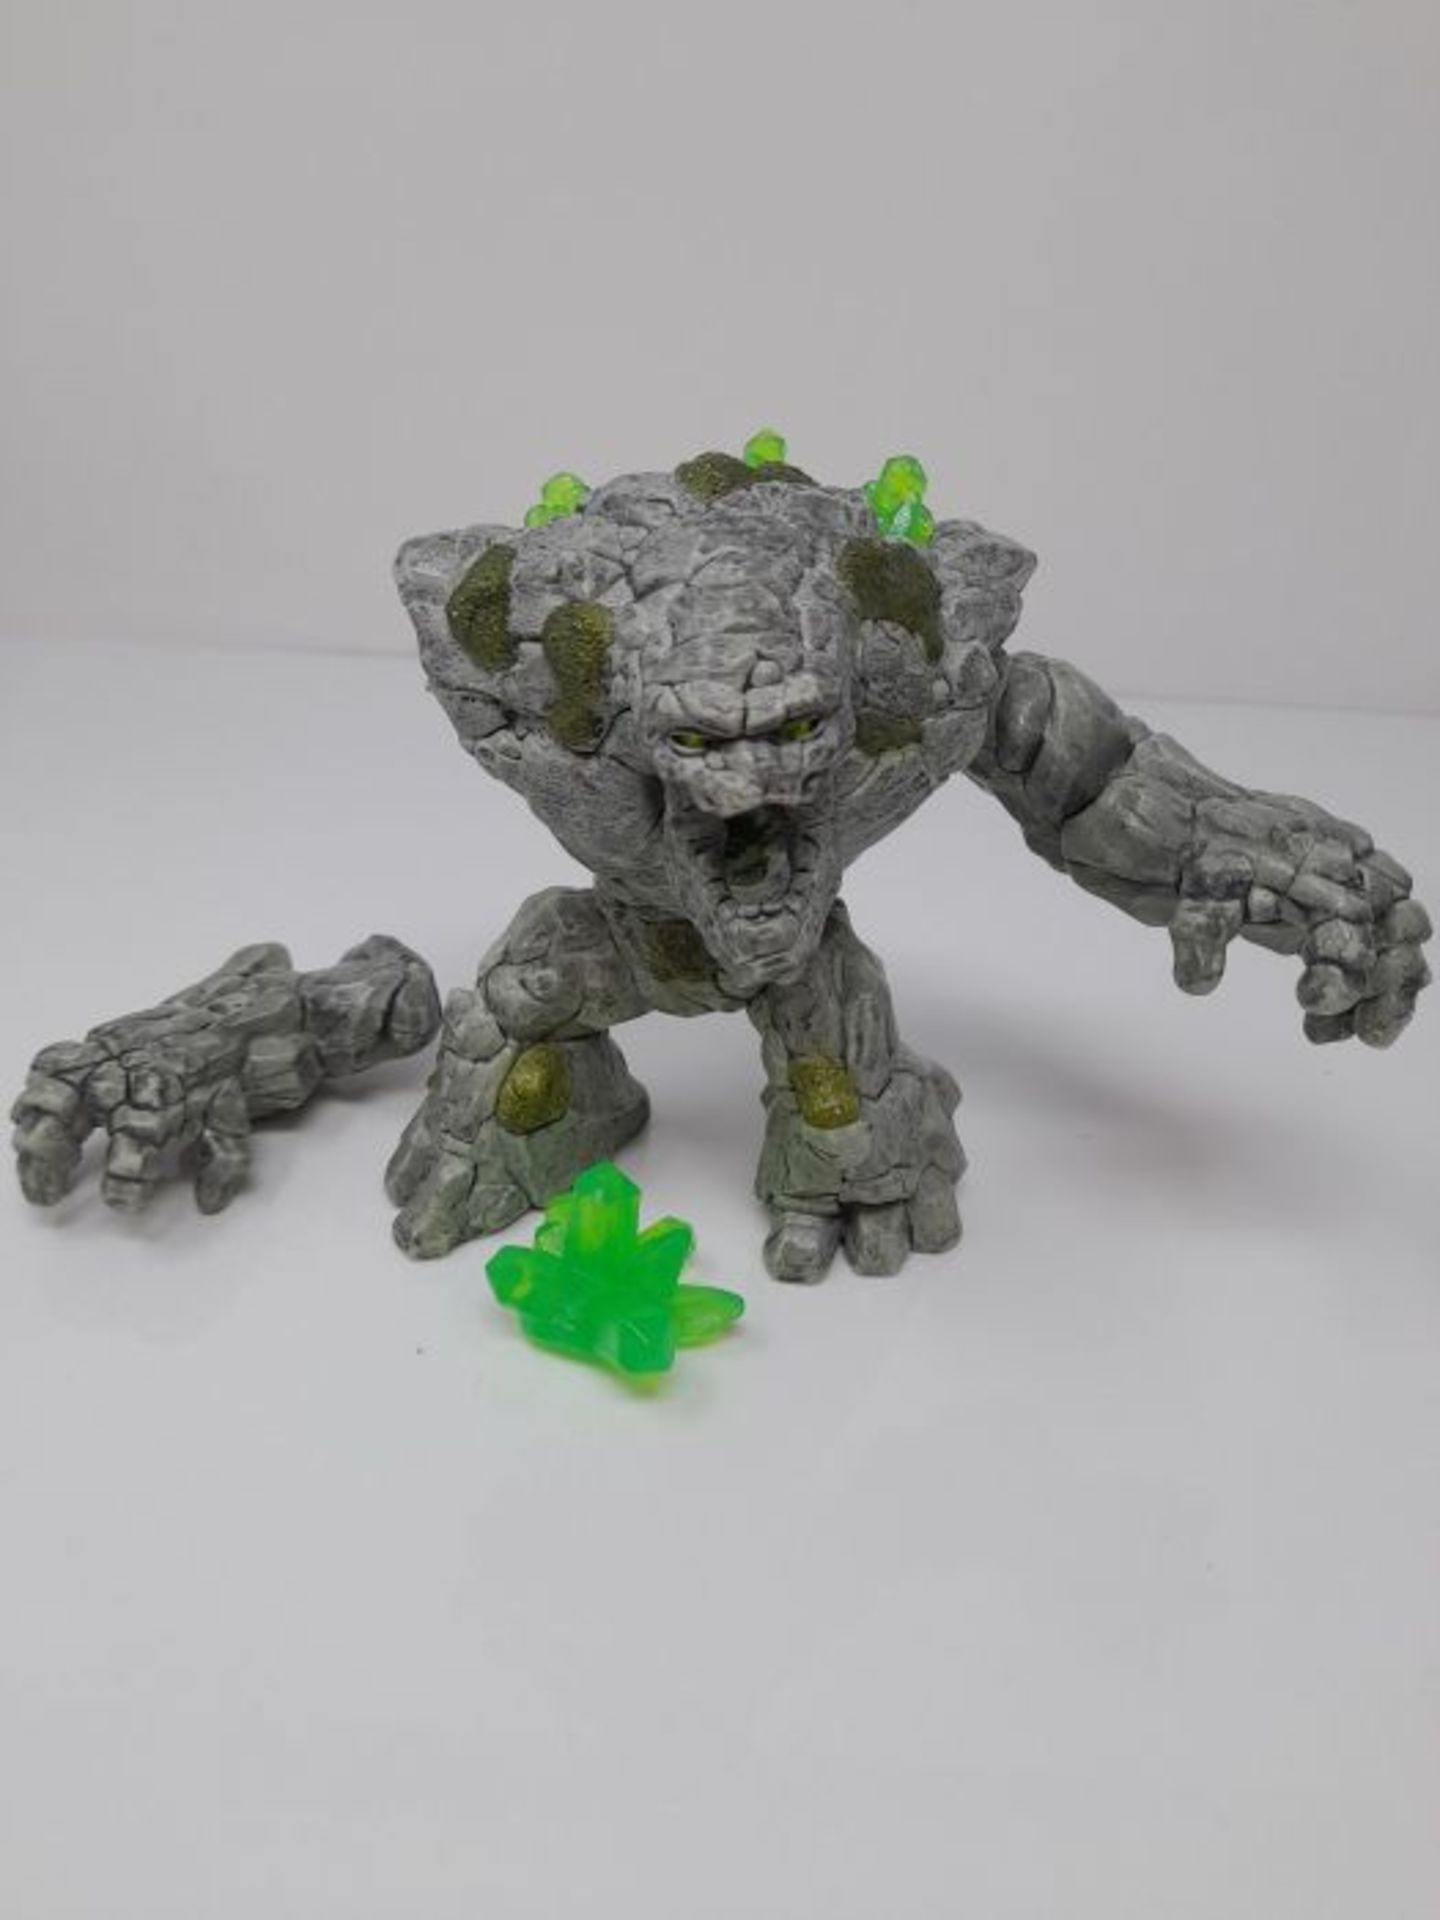 [CRACKED] Schleich Eldrador 70141 Stone monster - Image 2 of 2